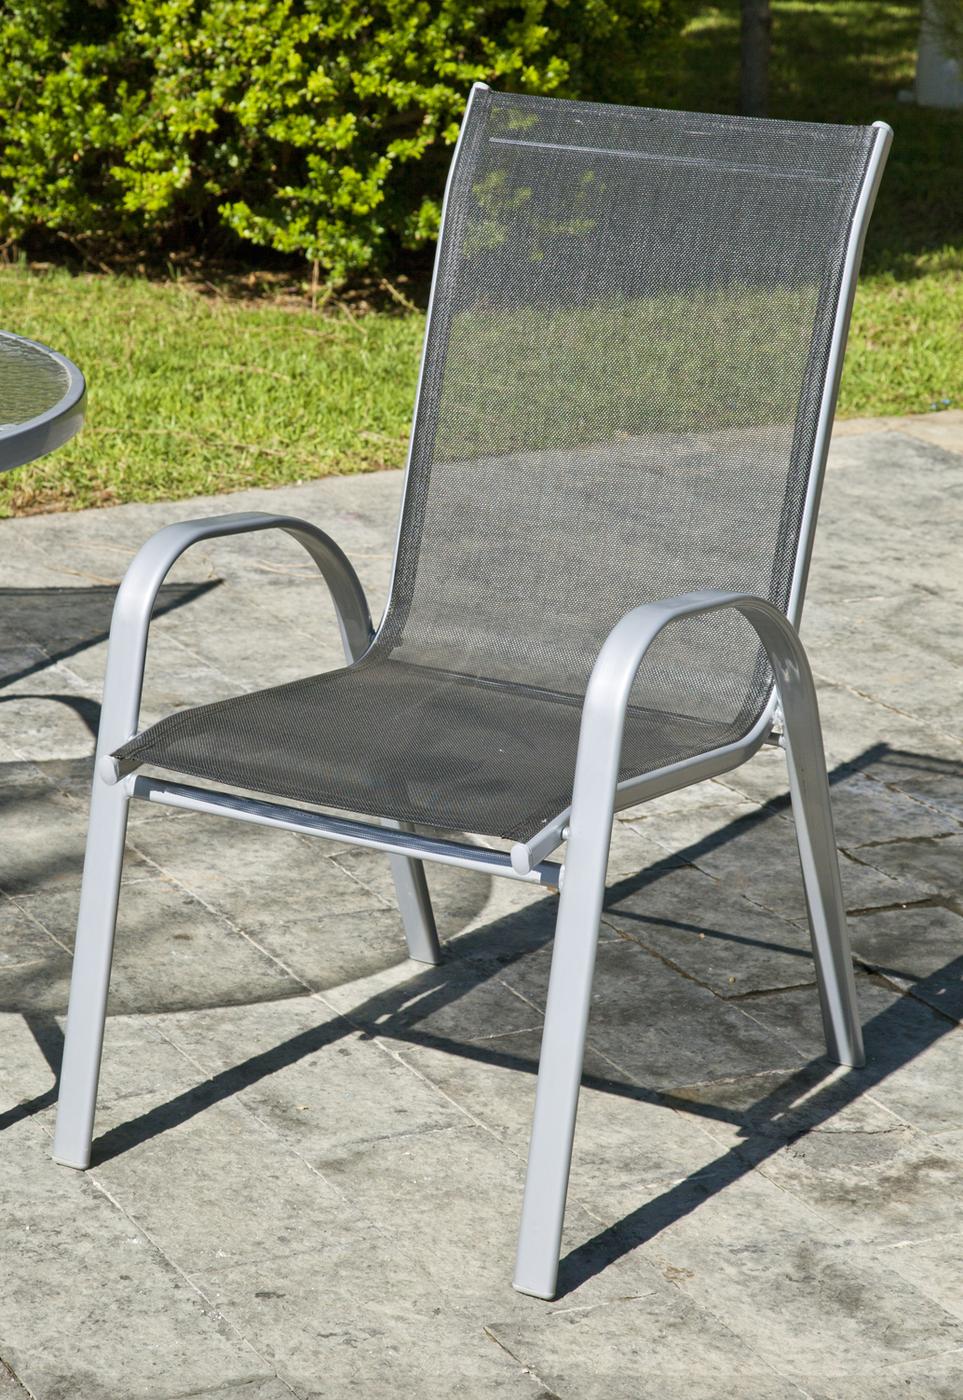 Conjunto Acero Seul 150-4 - Conjunto de acero color plata: mesa de 150x90 cm. Con tablero de cristal templado + 4 sillones apilables de acero y textilen